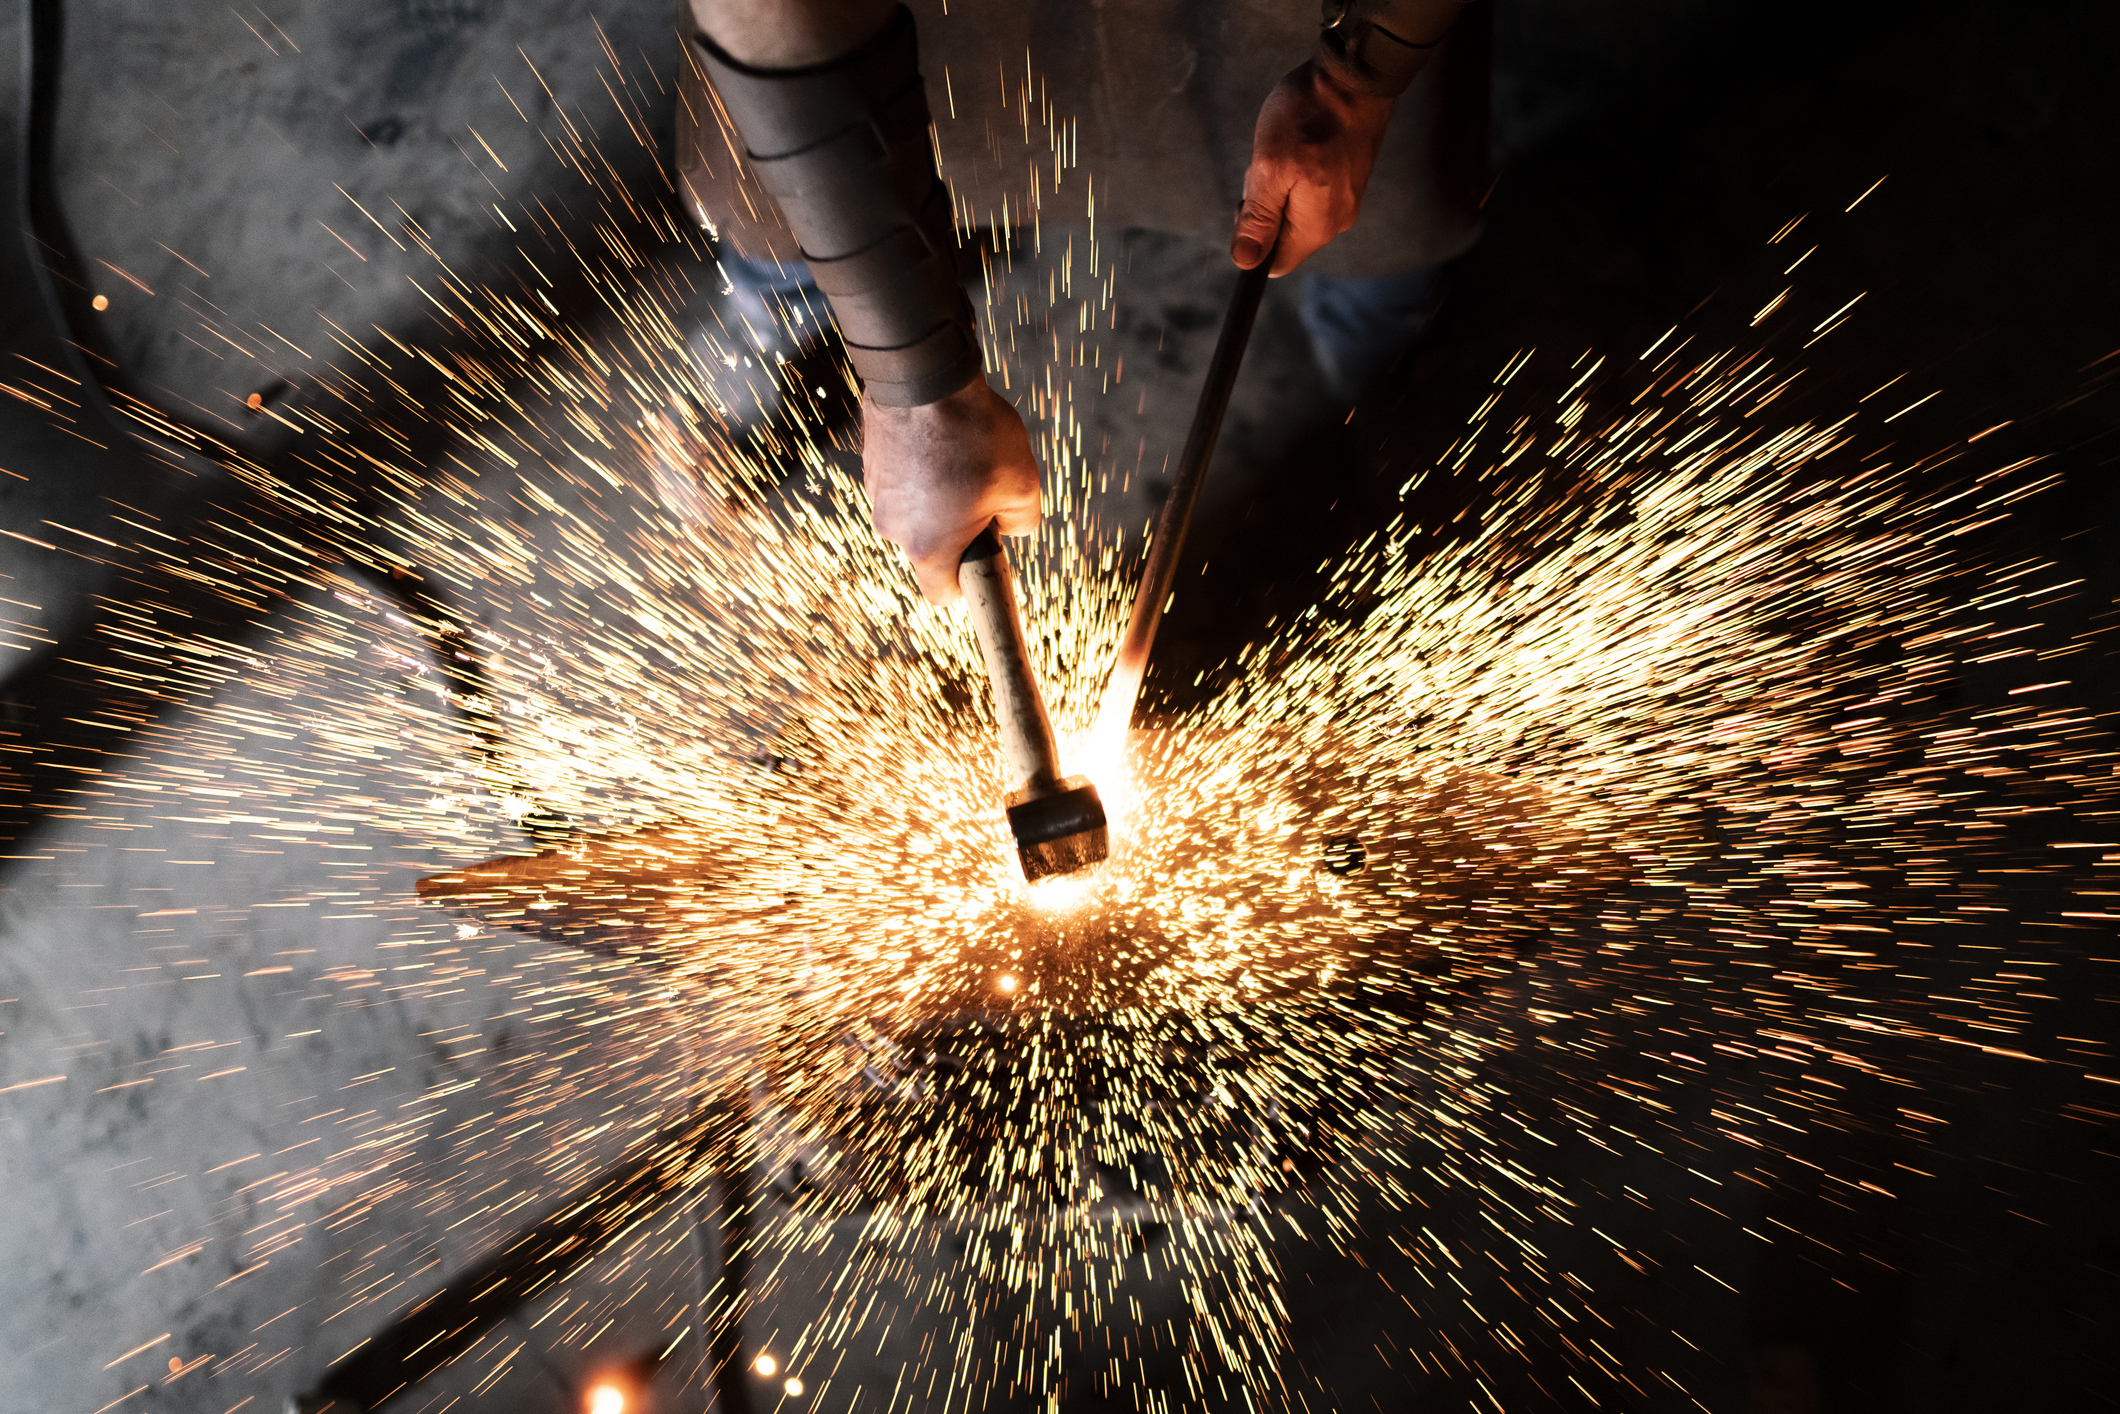 Seorang pandai besi yang terampil bekerja di bengkelnya memalu besi pada suhu tinggi di landasannya untuk membuat karya baru dengan membuat banyak bunga api beterbangan dalam gelap;  startup perangkat keras